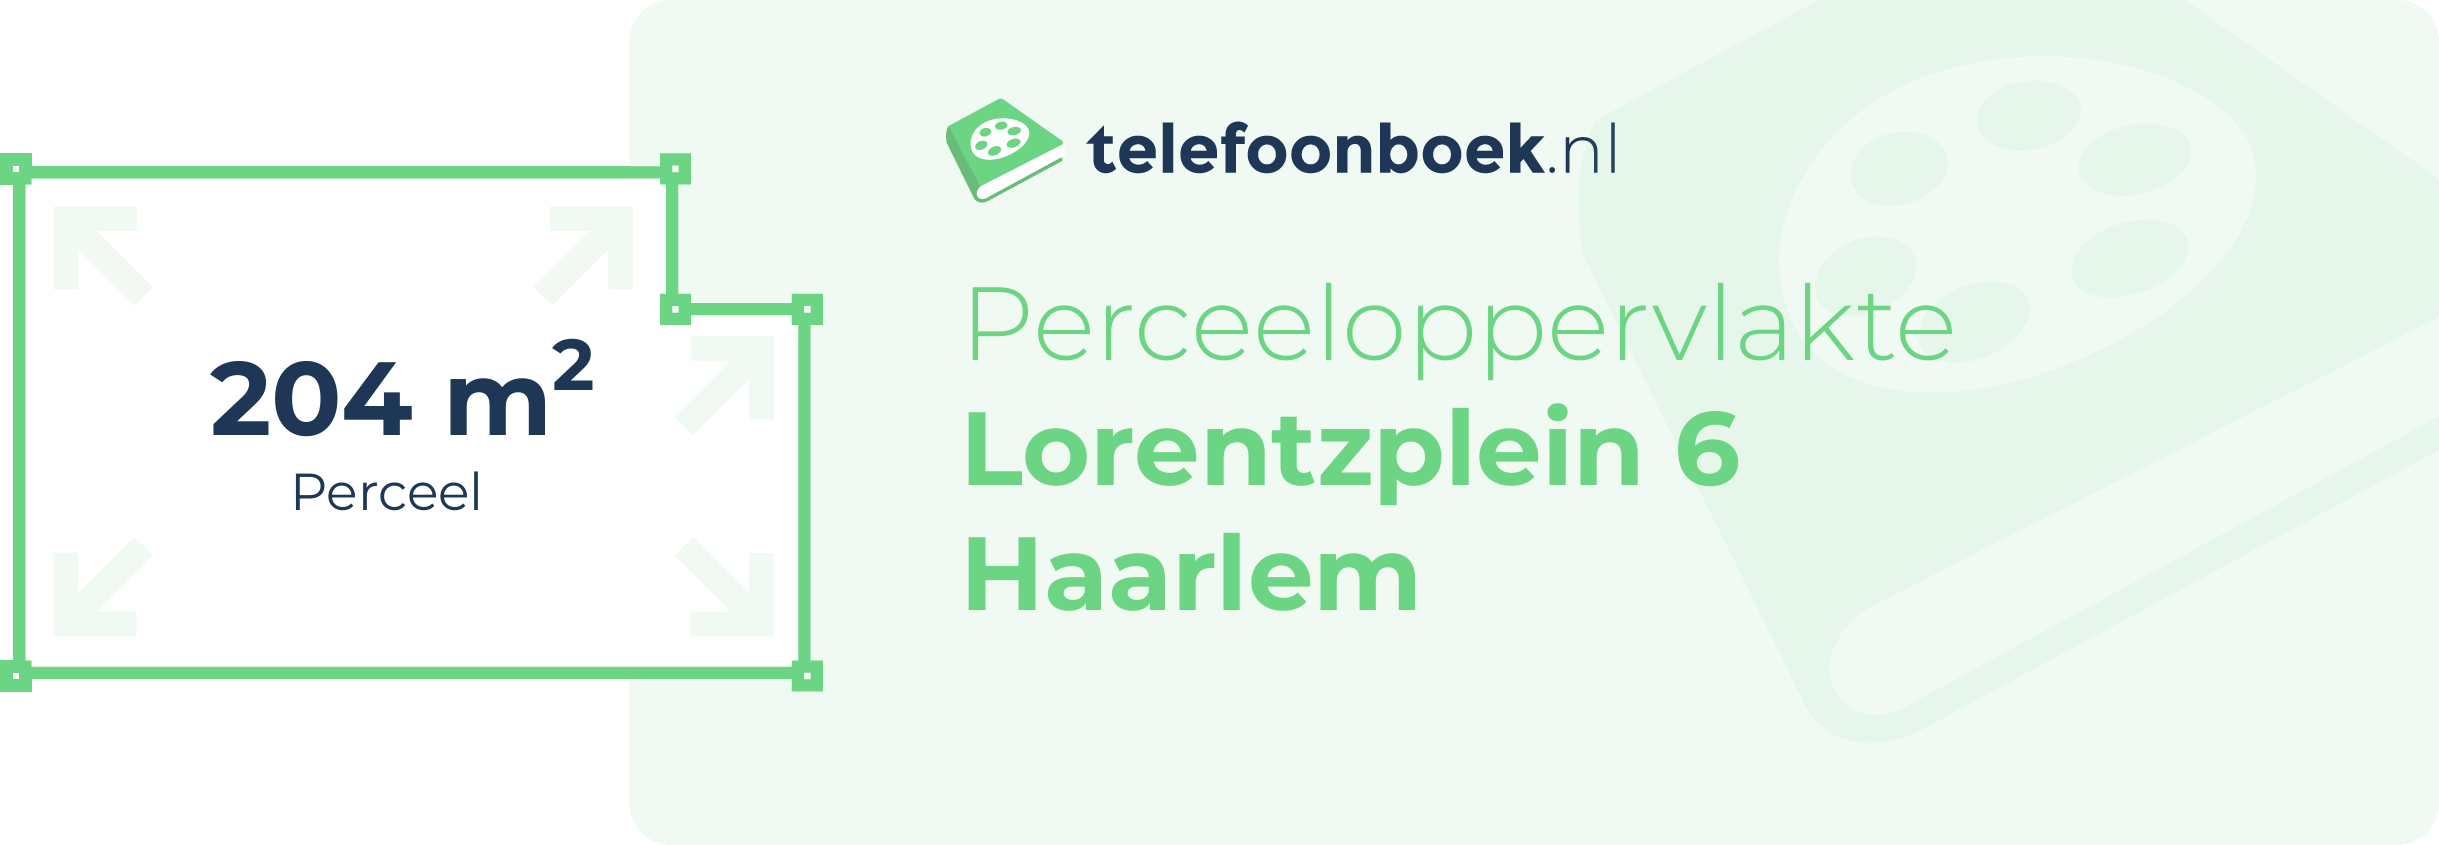 Perceeloppervlakte Lorentzplein 6 Haarlem